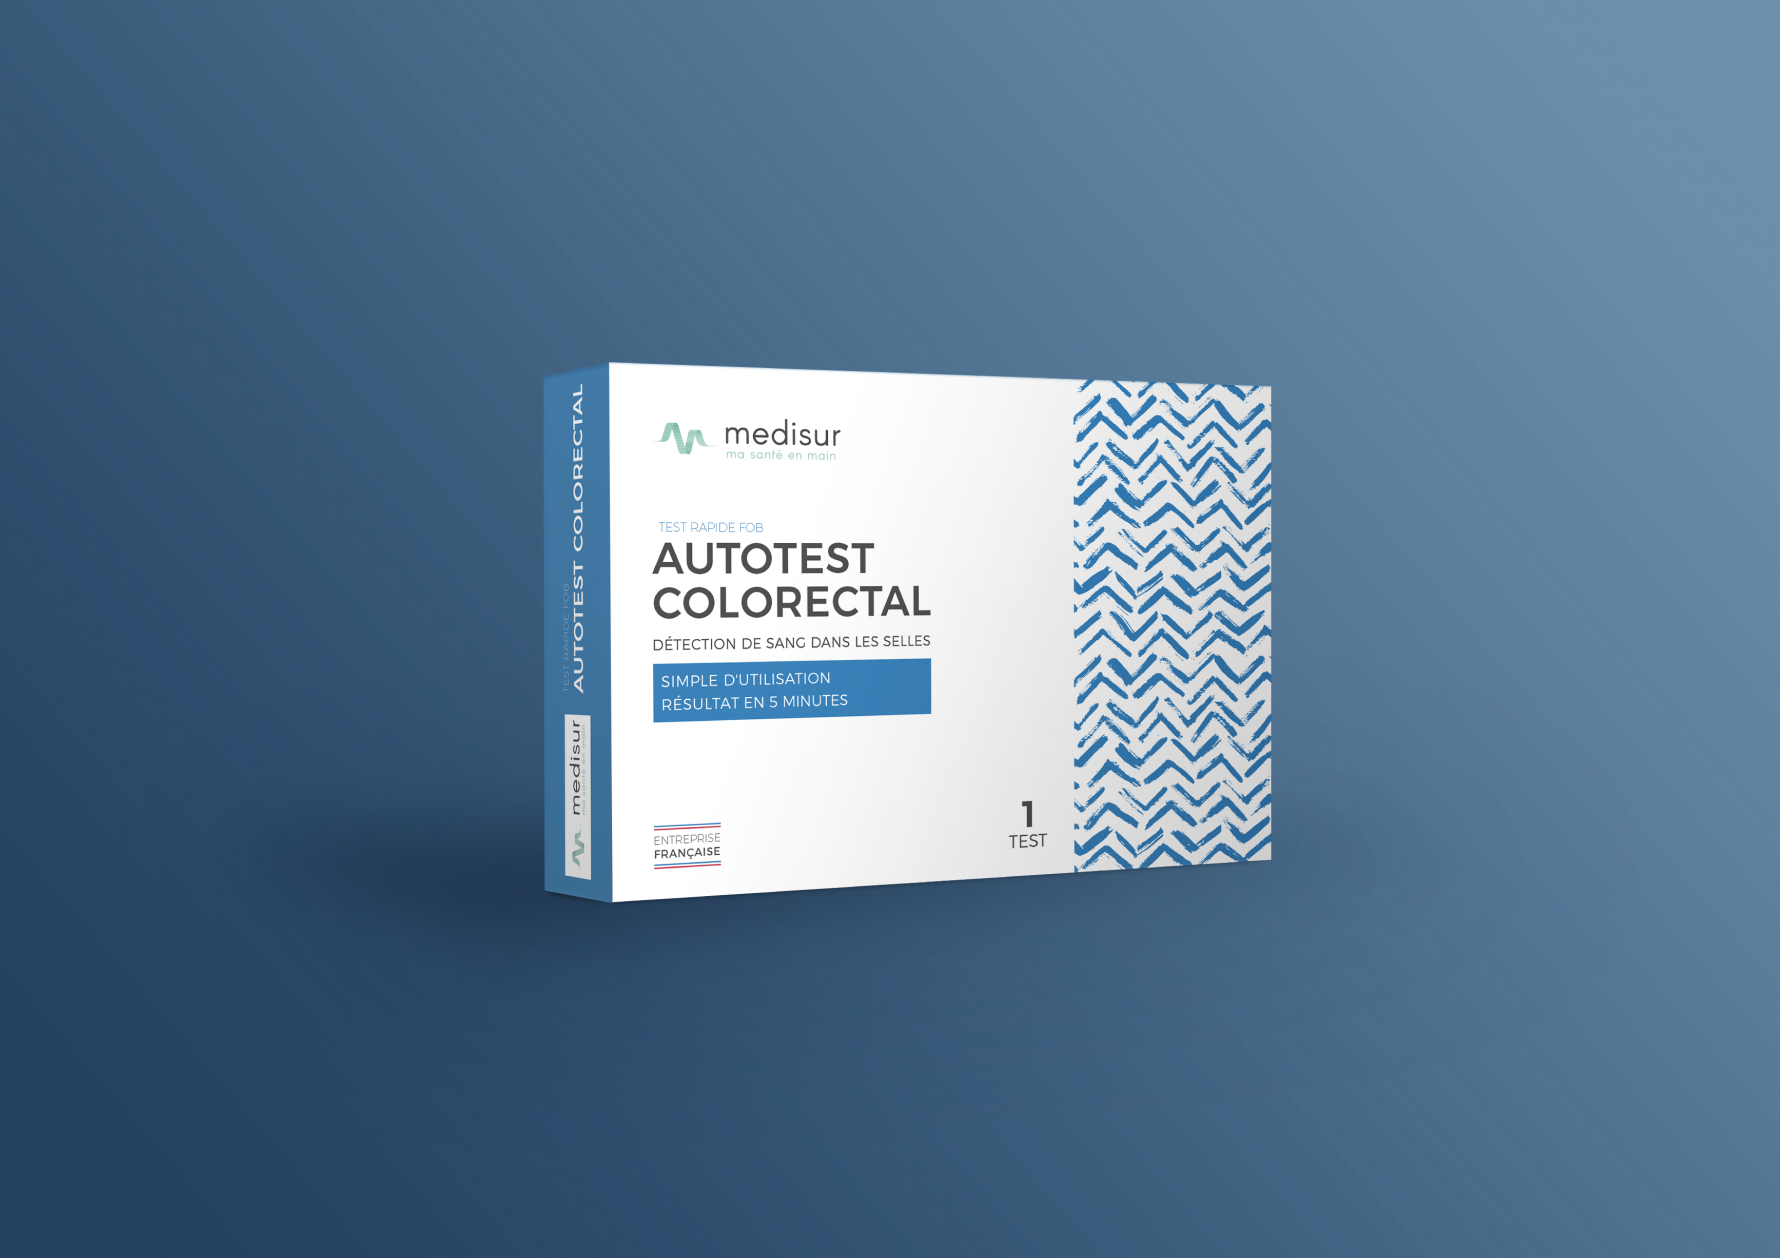 produits_autotest colorectal medisur